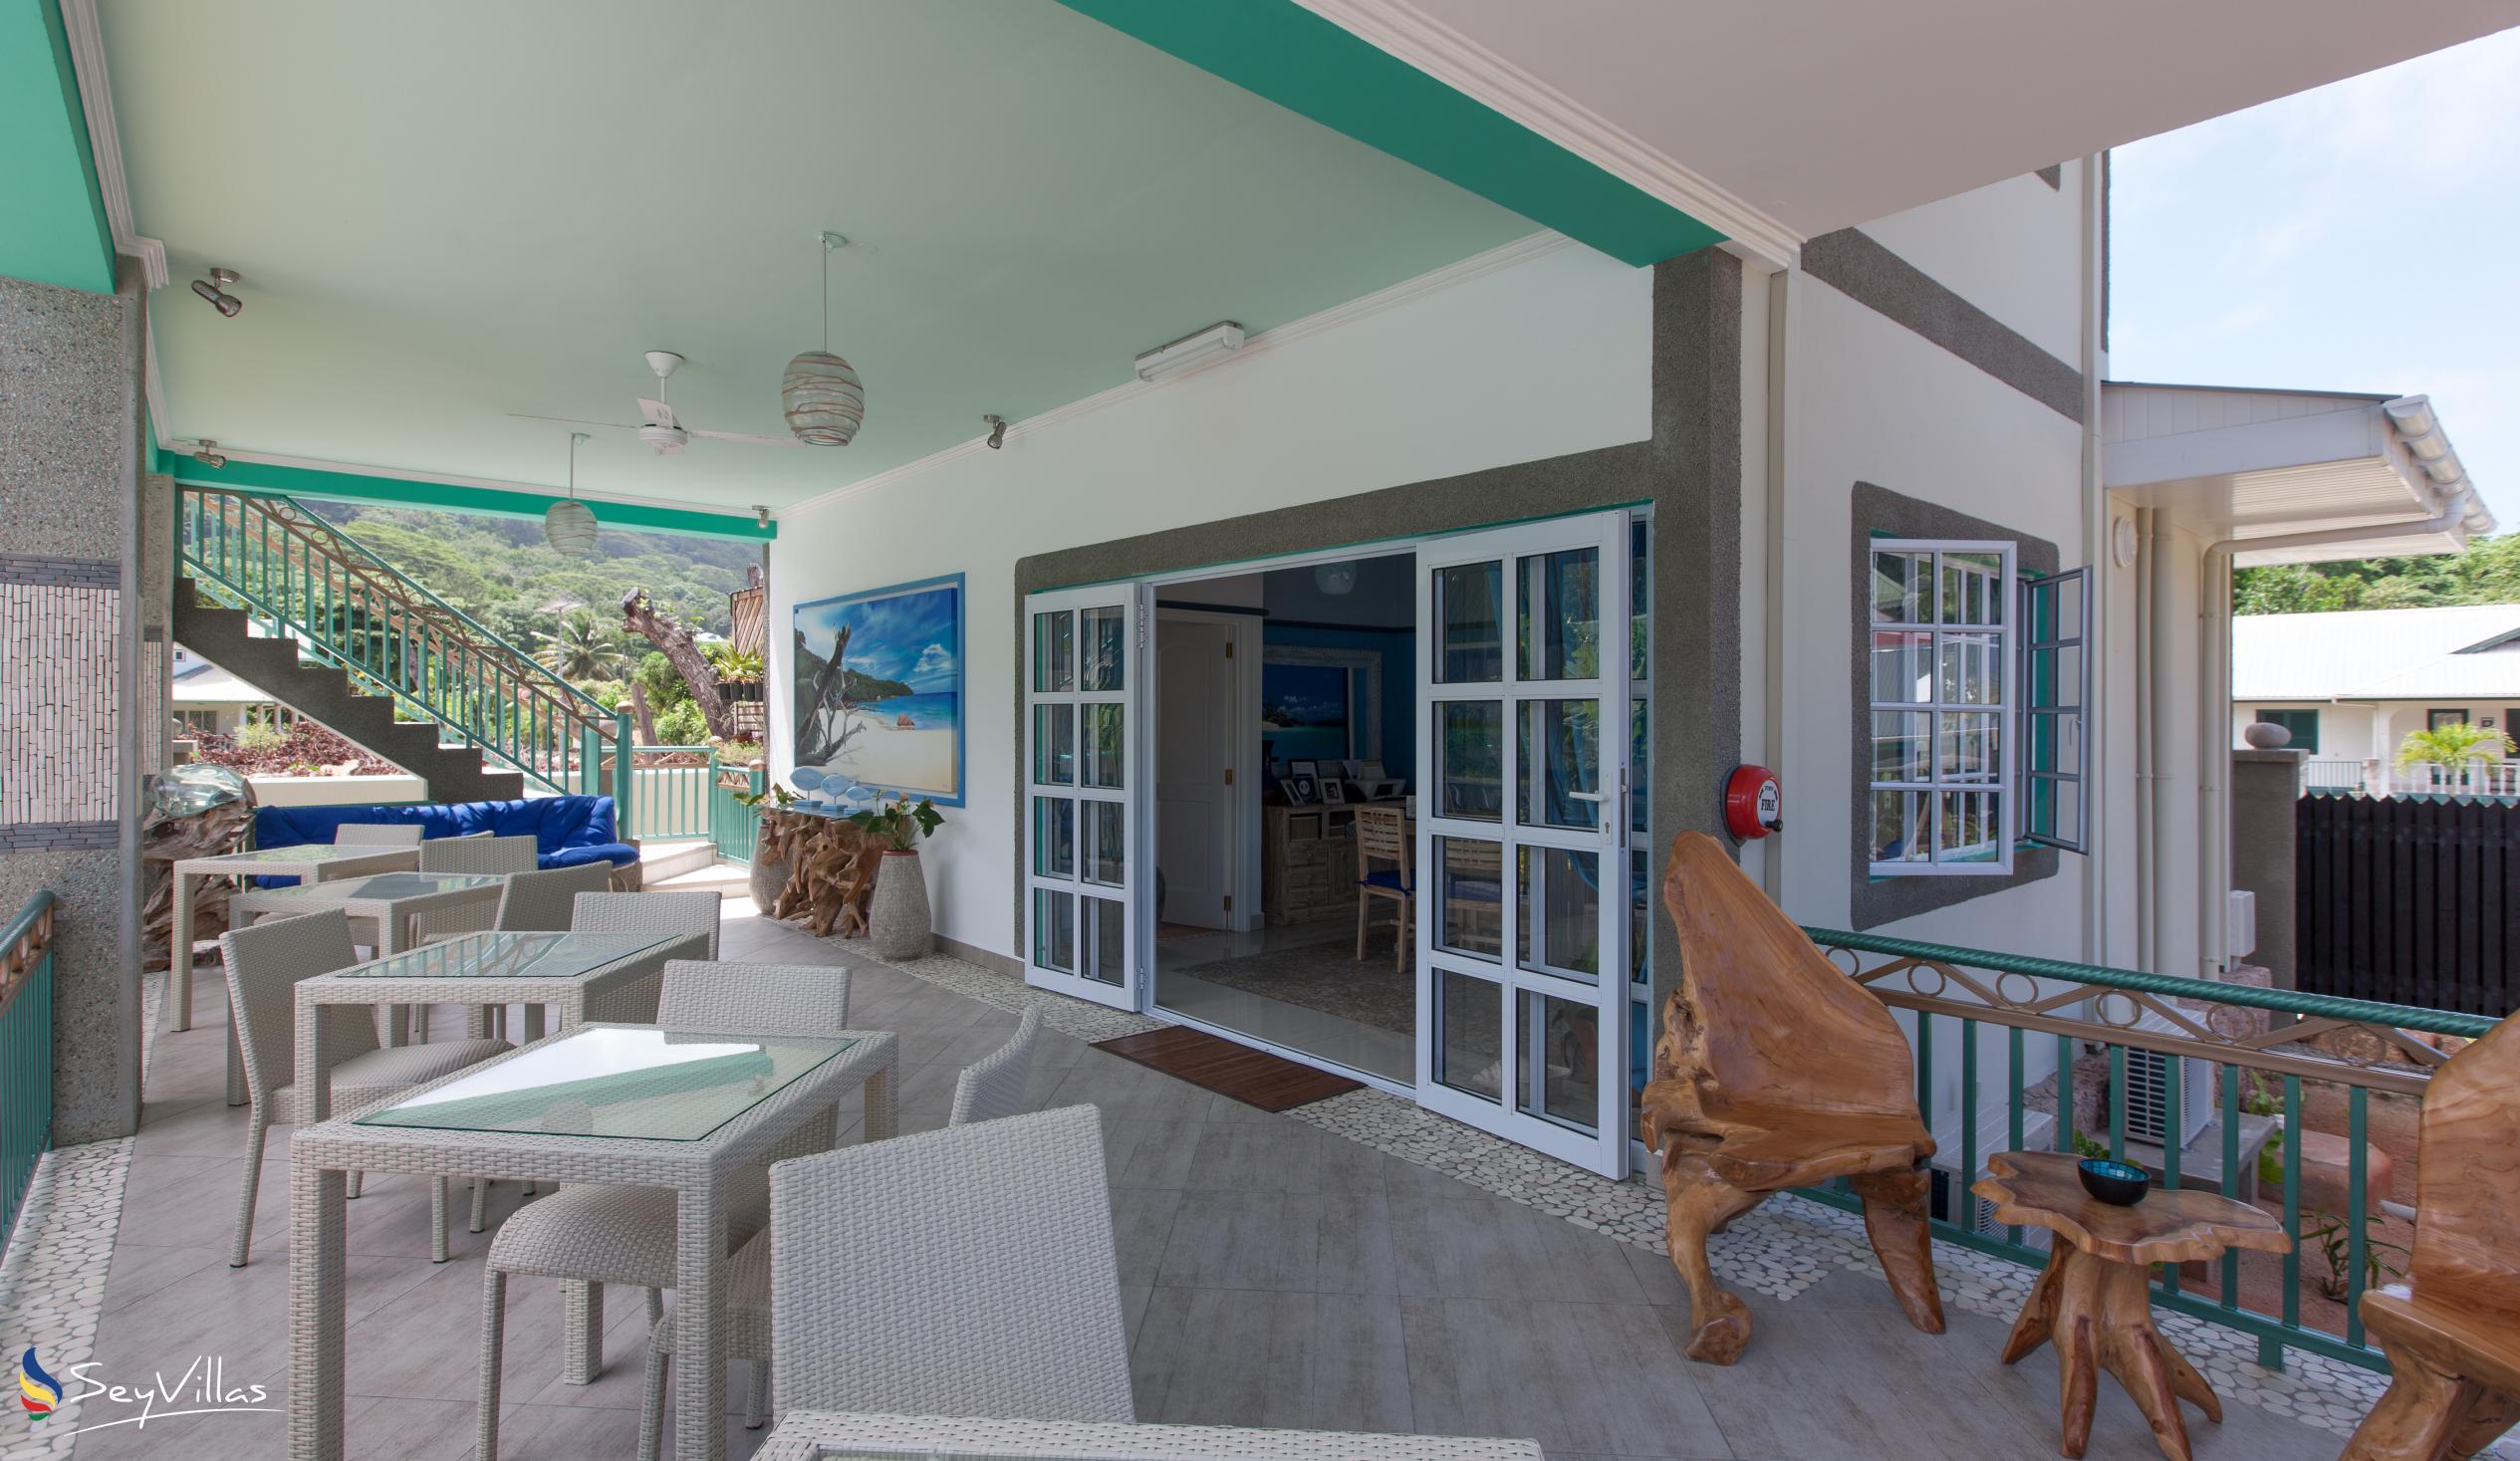 Foto 45: Villa Charme De L'ile - Appartamento Deluxe con vista piscina - La Digue (Seychelles)